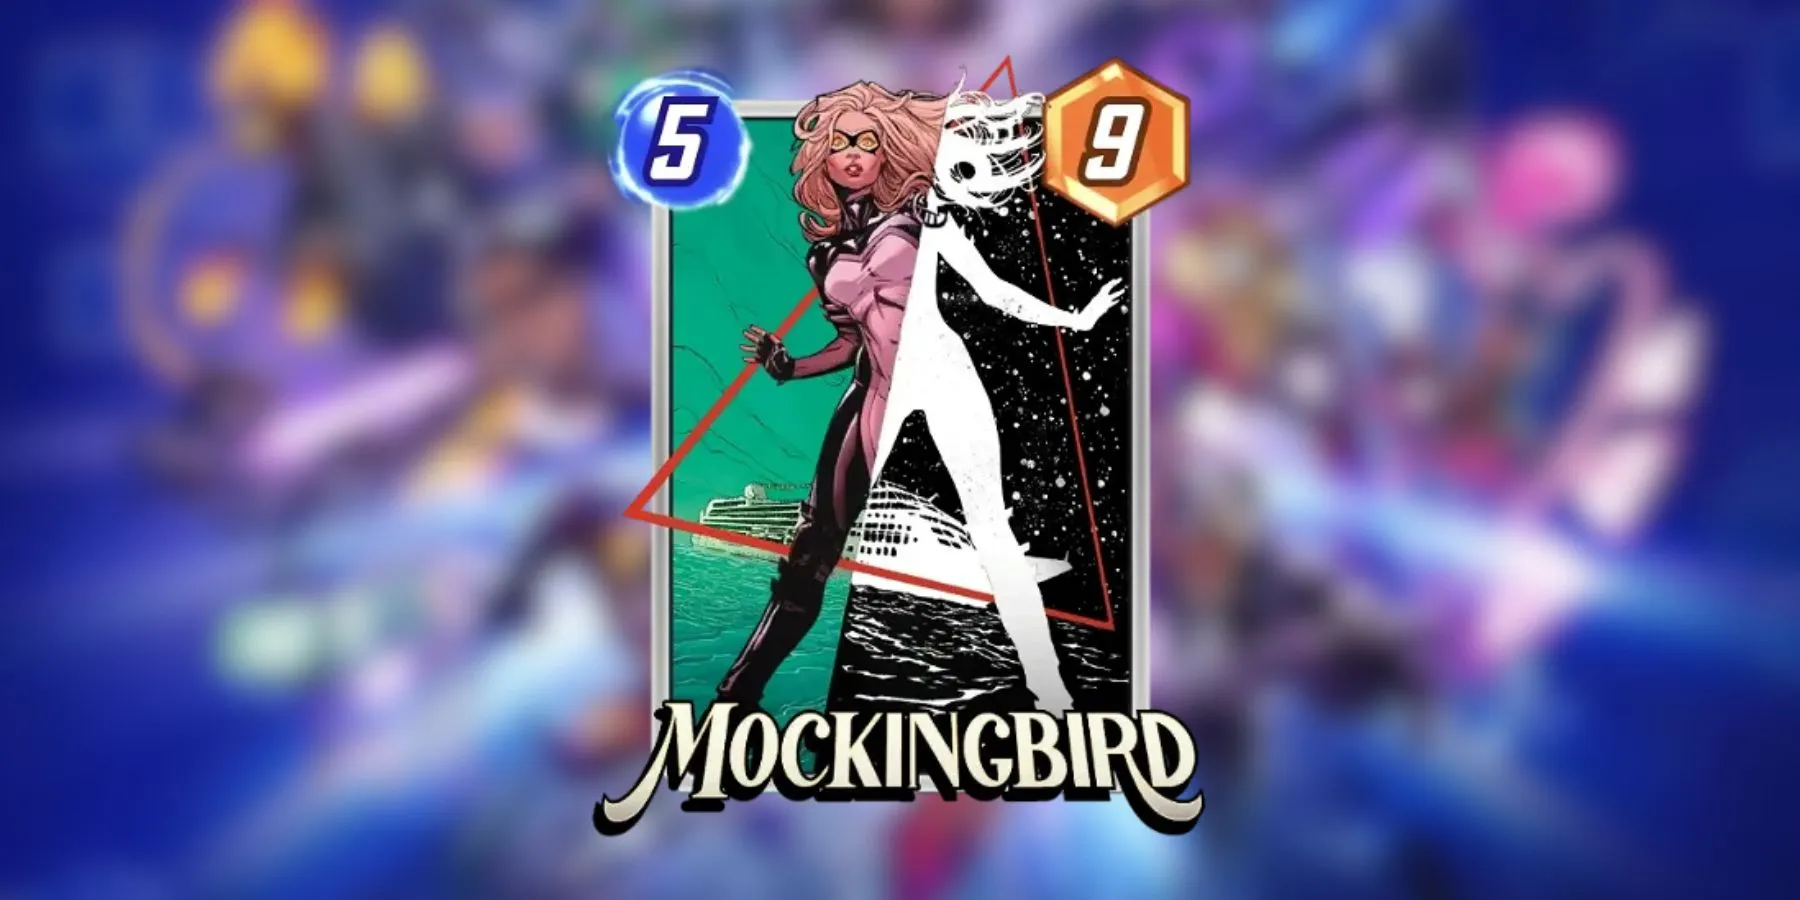 漫威快拍中的 Mockingbird 卡片封面艺术。